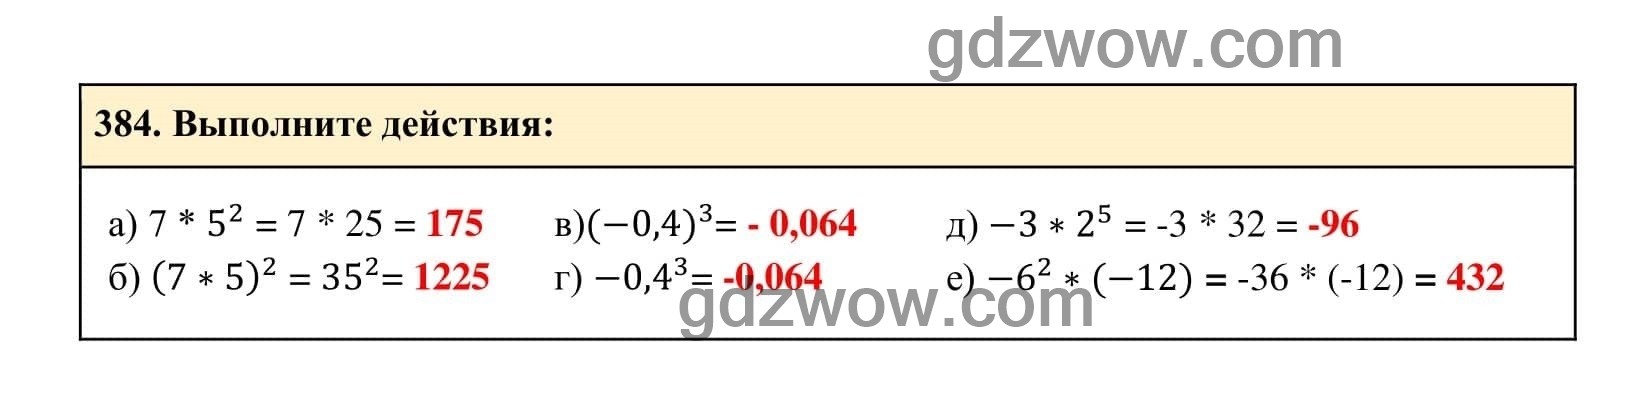 Упражнение 384 - ГДЗ по Алгебре 7 класс Учебник Макарычев (решебник) - GDZwow